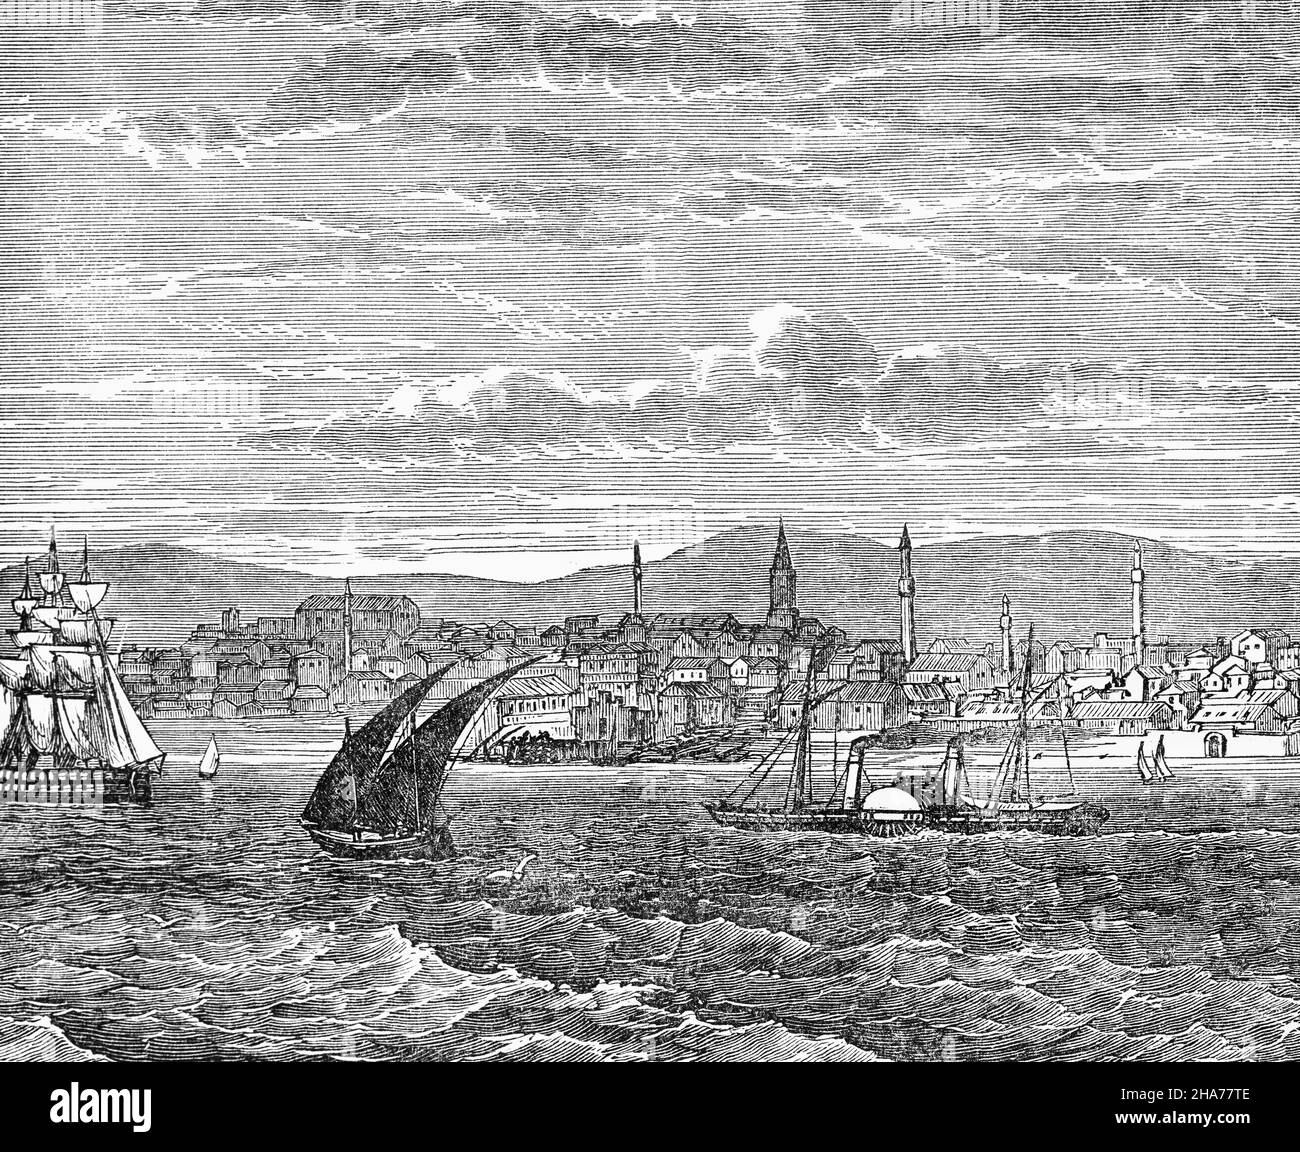 Illustration de Varna, la troisième plus grande ville de la région du nord de la Bulgarie, à la fin du siècle 19th, sur la côte bulgare de la mer Noire dans le golfe de Varna.Pendant la fin de la domination ottomane, les Britanniques et les Français faisant campagne contre la Russie pendant la guerre de Crimée (1854-1856) ont utilisé Varna comme quartier général et base navale principale; de nombreux soldats sont morts du choléra et la ville a été dévastée par un incendie; plus tard, pour devenir le principal port d'exportation du pays. Banque D'Images